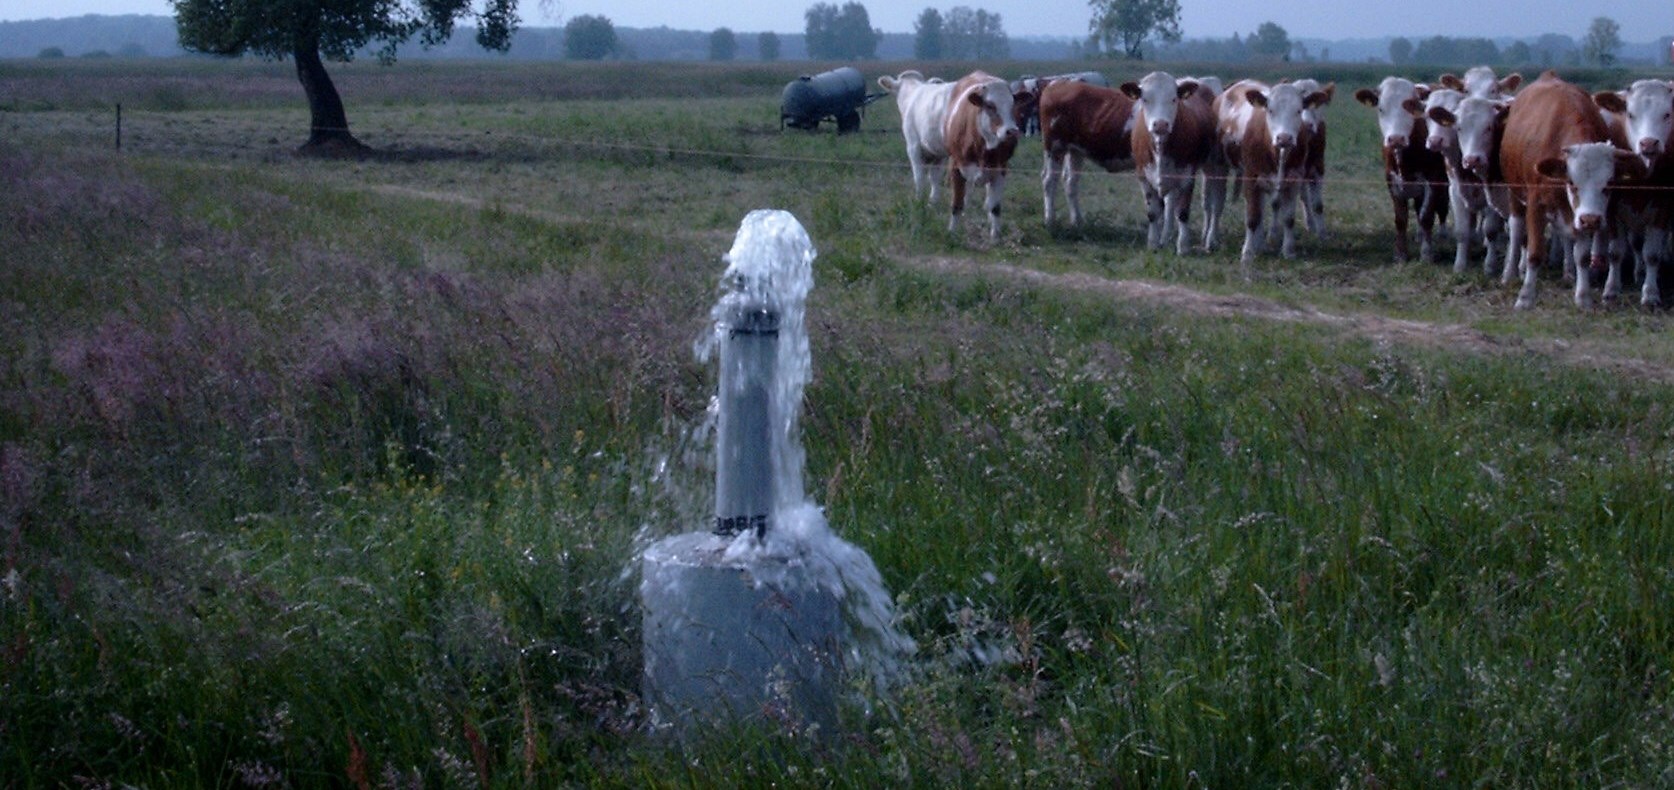 Artesischer Brunnen auf einer Weide mit neugierigen Kühen